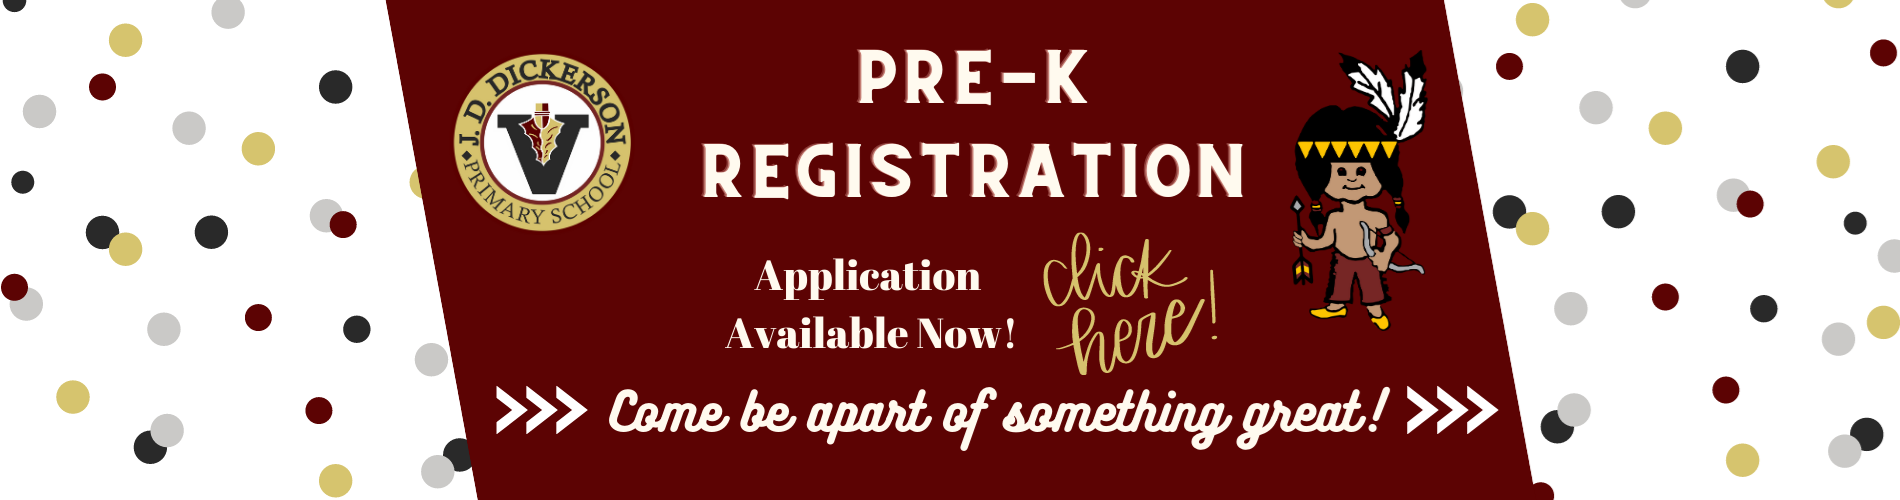 Pre-K Registration